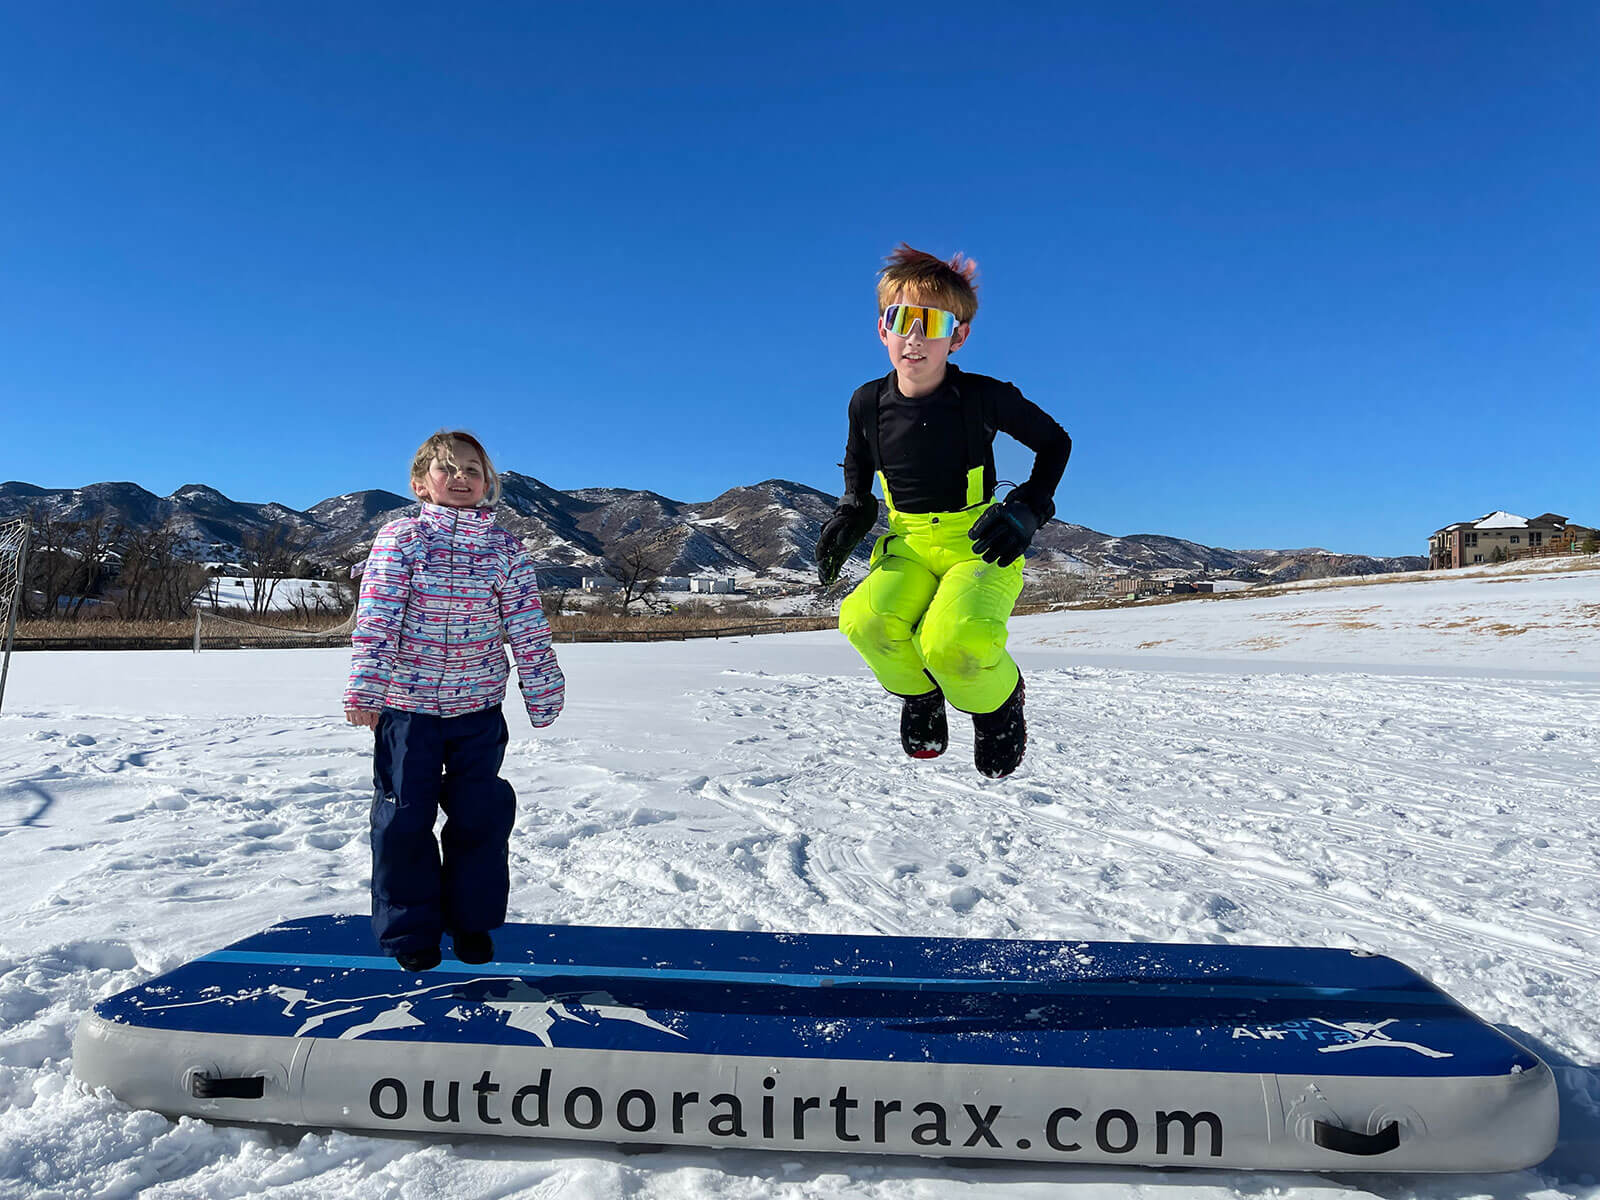 Outdoor AirTraX - Backyard Dreams